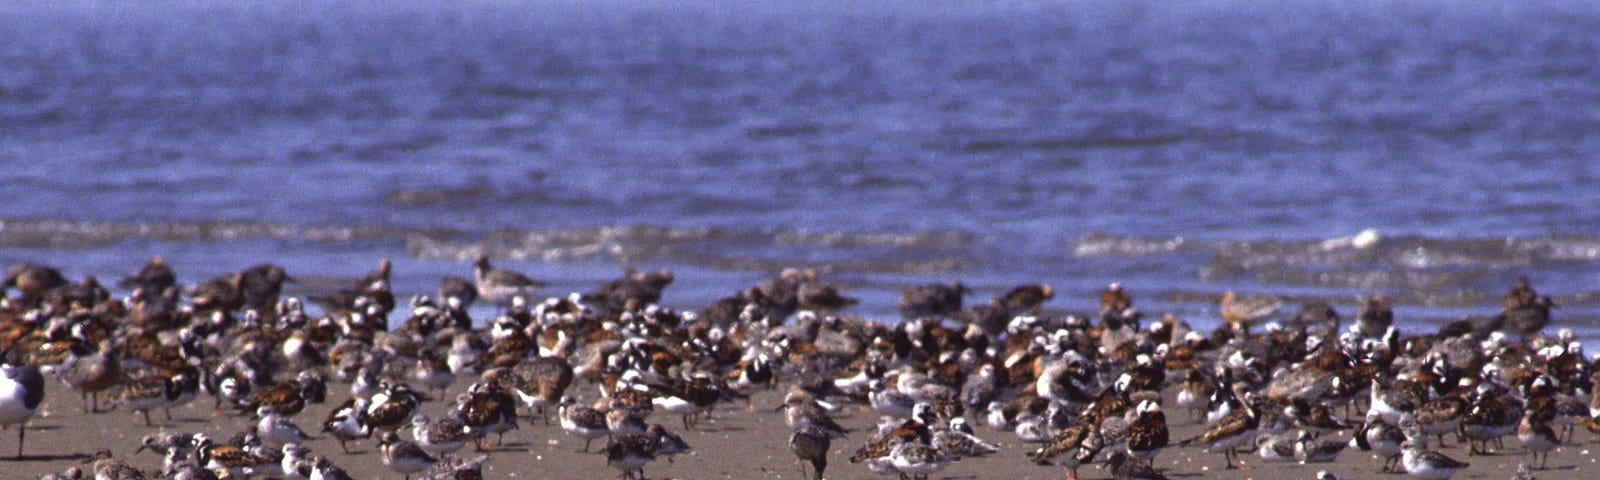 Spit of sand in ocean with dozens of shorebirds